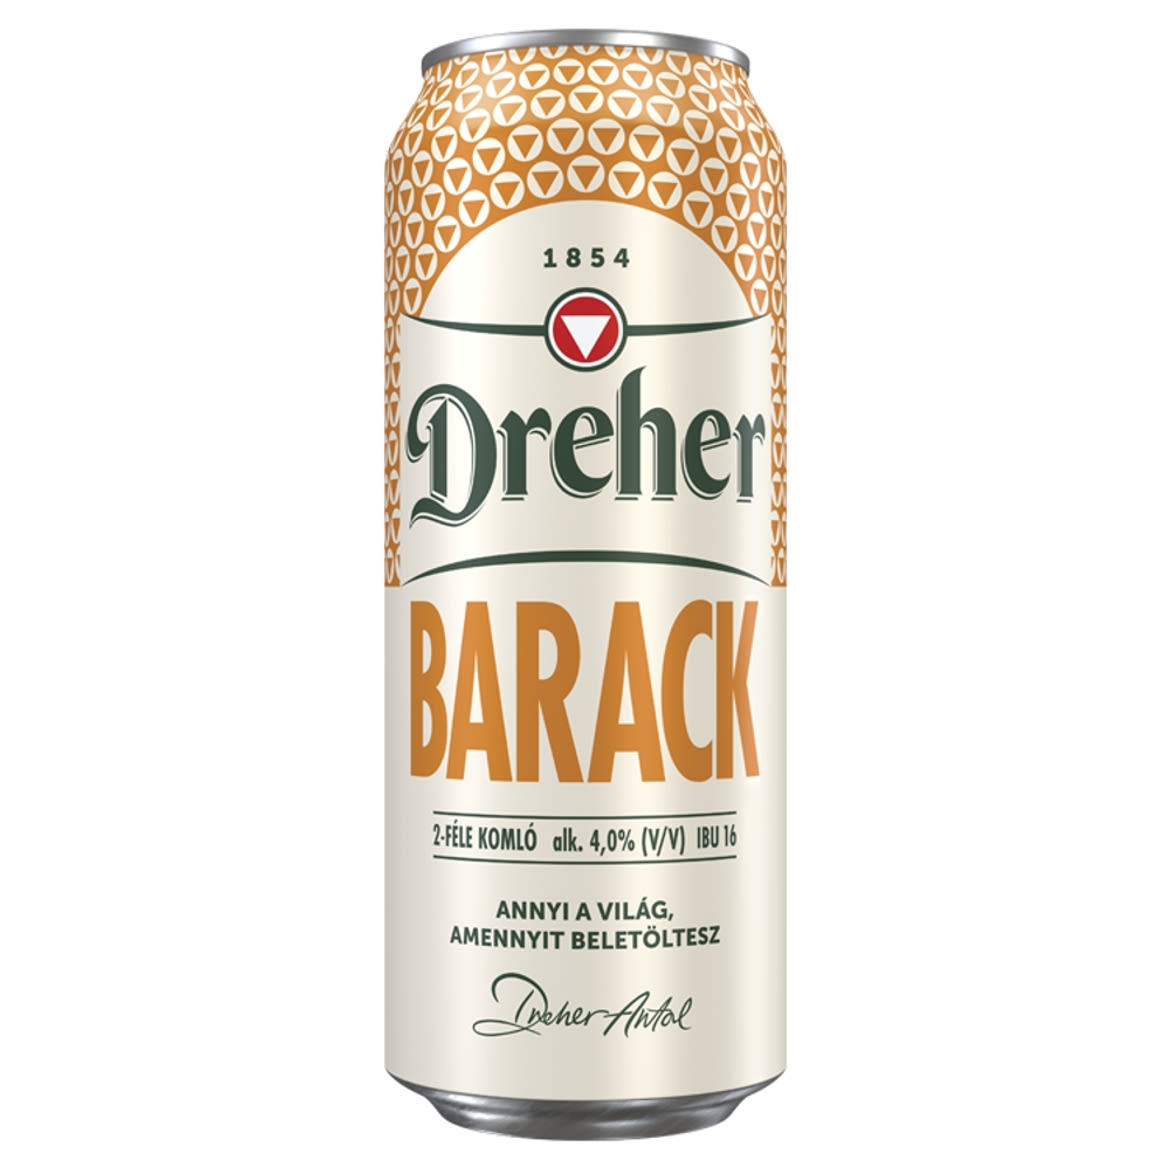 Dreher Barack világos sör és barack ízű ital keveréke 4%